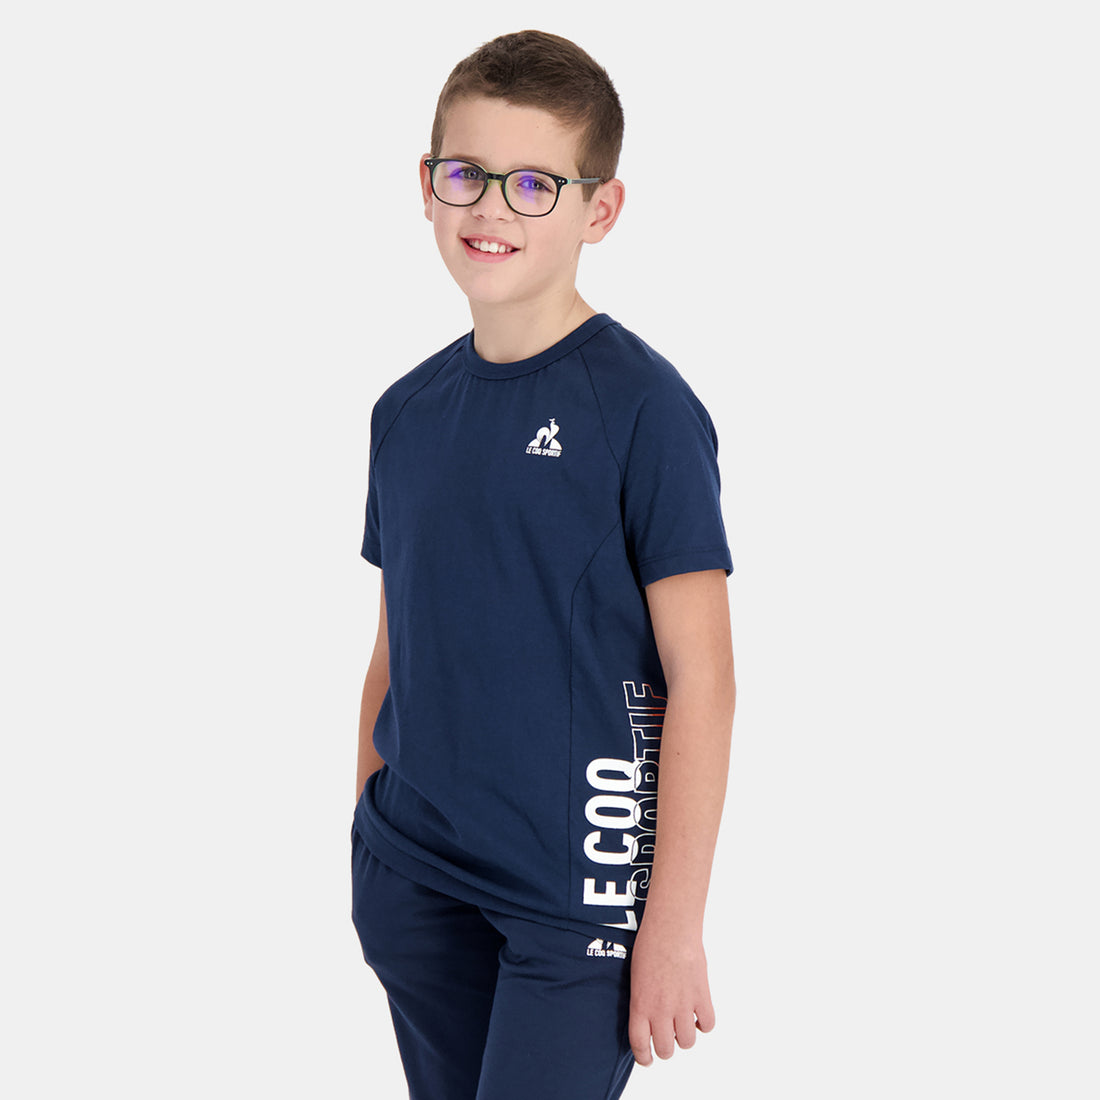 2410125-SAISON 2 Tee SS N°1 Enfant dress blues  | Camiseta para Niño